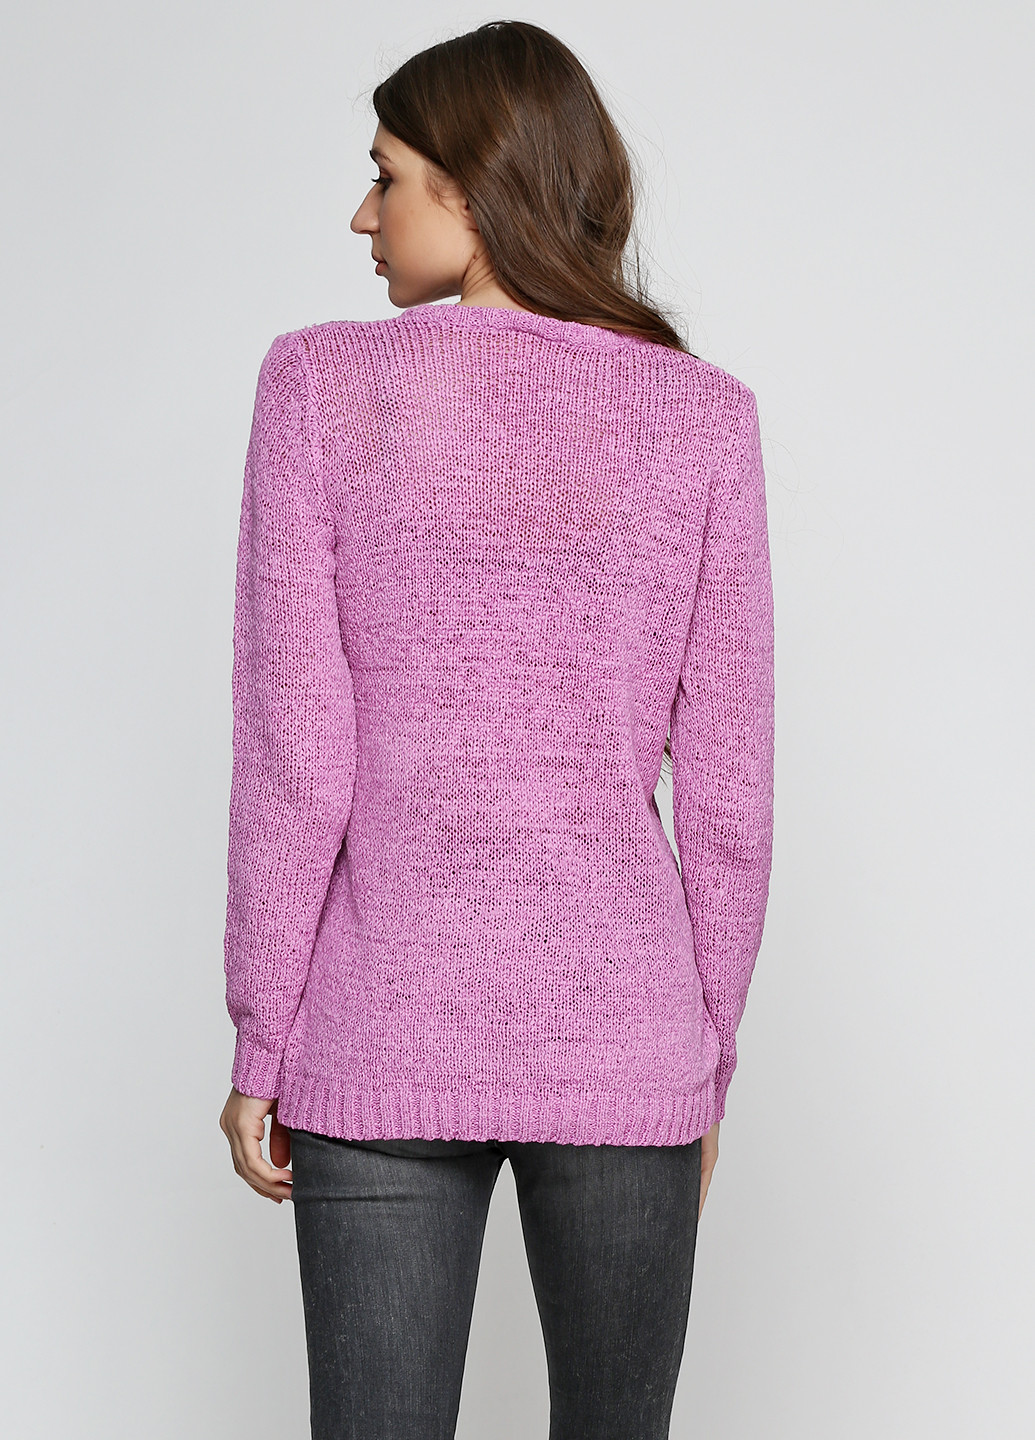 Сиреневый демисезонный пуловер пуловер Long Island